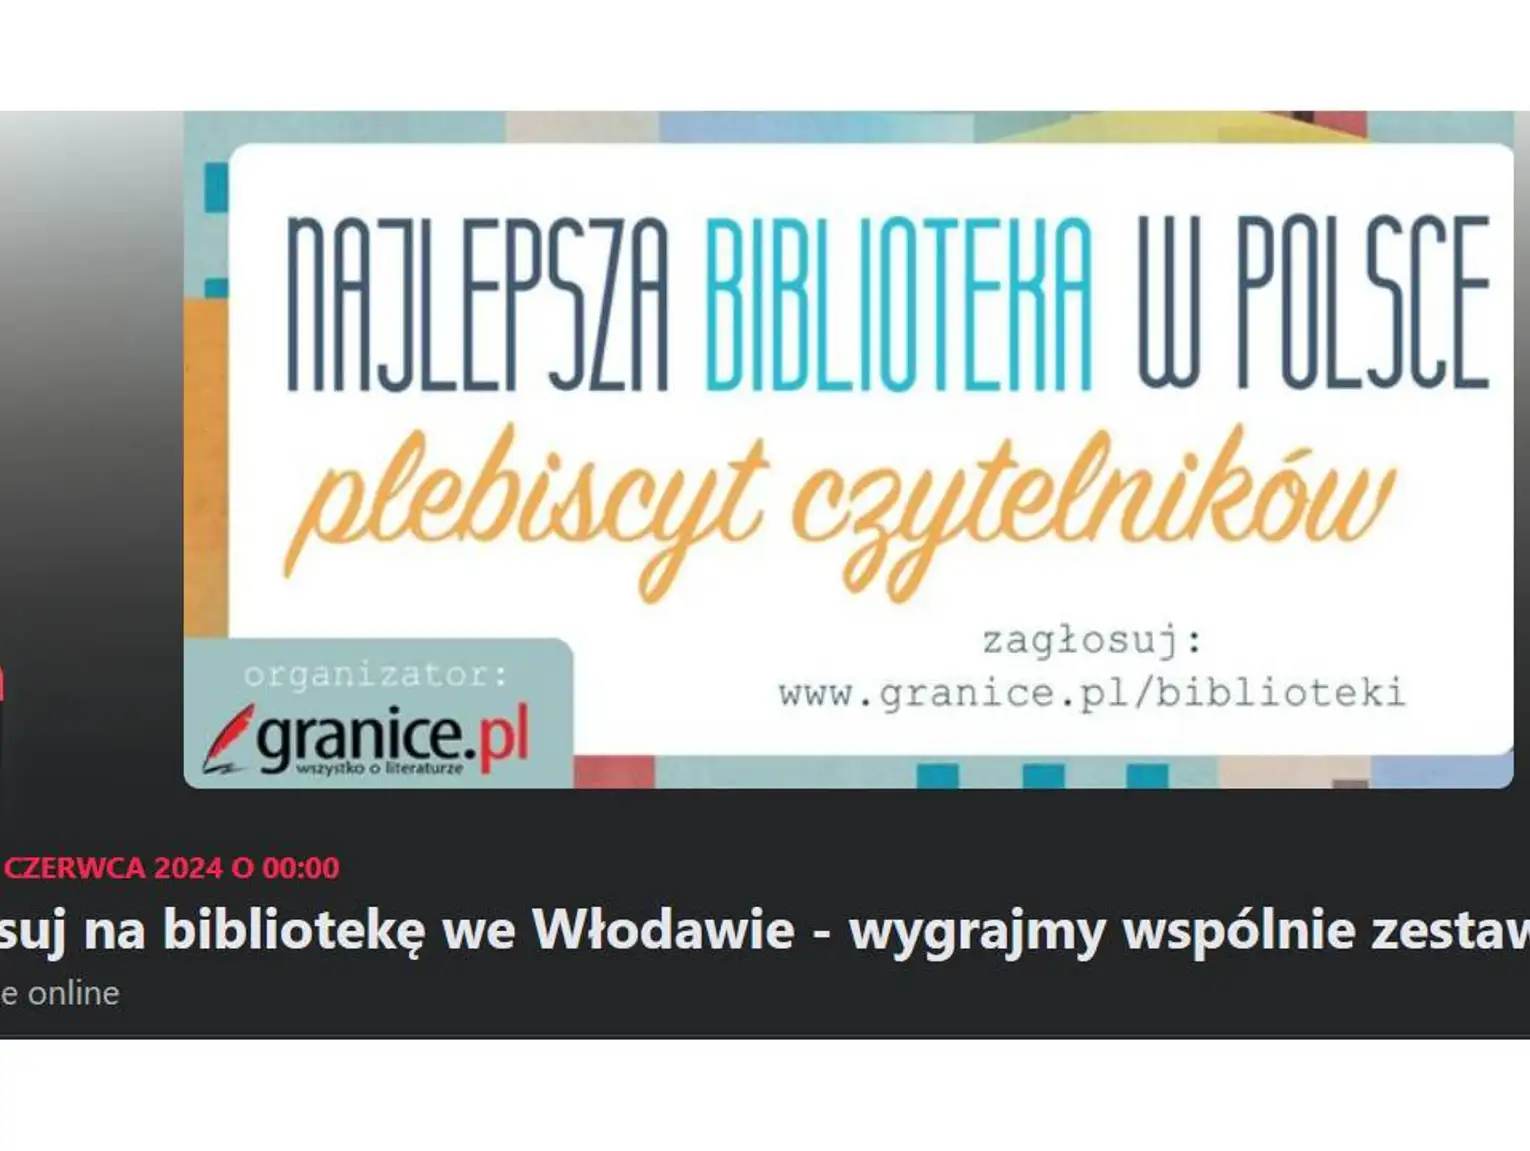 Włodawska biblioteka walczy o pierwsze miejsce!